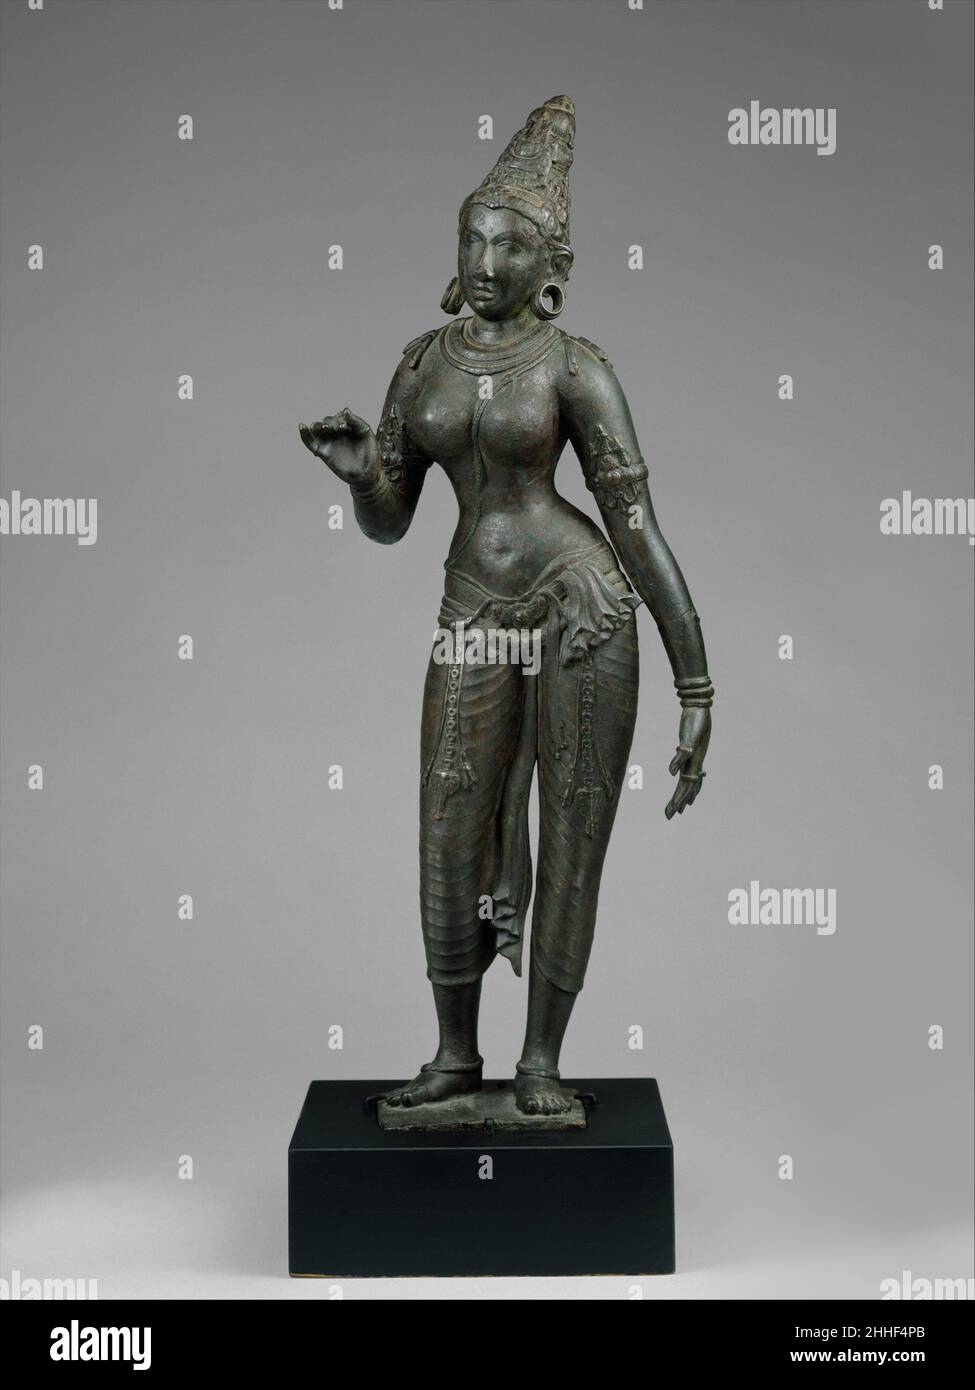 Parvati debout CA. Premier quart du 10th siècle Indien (Tamil Nadu) Parvati est la consort de Shiva et la mère du dieu à tête d'éléphant Ganesha.Cette magnifique statue est l'une des plus belles représentations de Chola de Parvati à l'extérieur de l'Inde.Le génie et la compétence évidente du sculpteur ont produit une image intemporelle de la déesse ainsi qu'une figure féminine de beauté et de grâce surpassant.Sa calèche lyrique et rythmique et les lignes douces mais fermes de son corps suggèrent l'idéal de la femelle divine et éternelle.Écoutez des experts illuminer l'histoire de cette œuvre Écoutez ou faites une pause #7960.S Banque D'Images